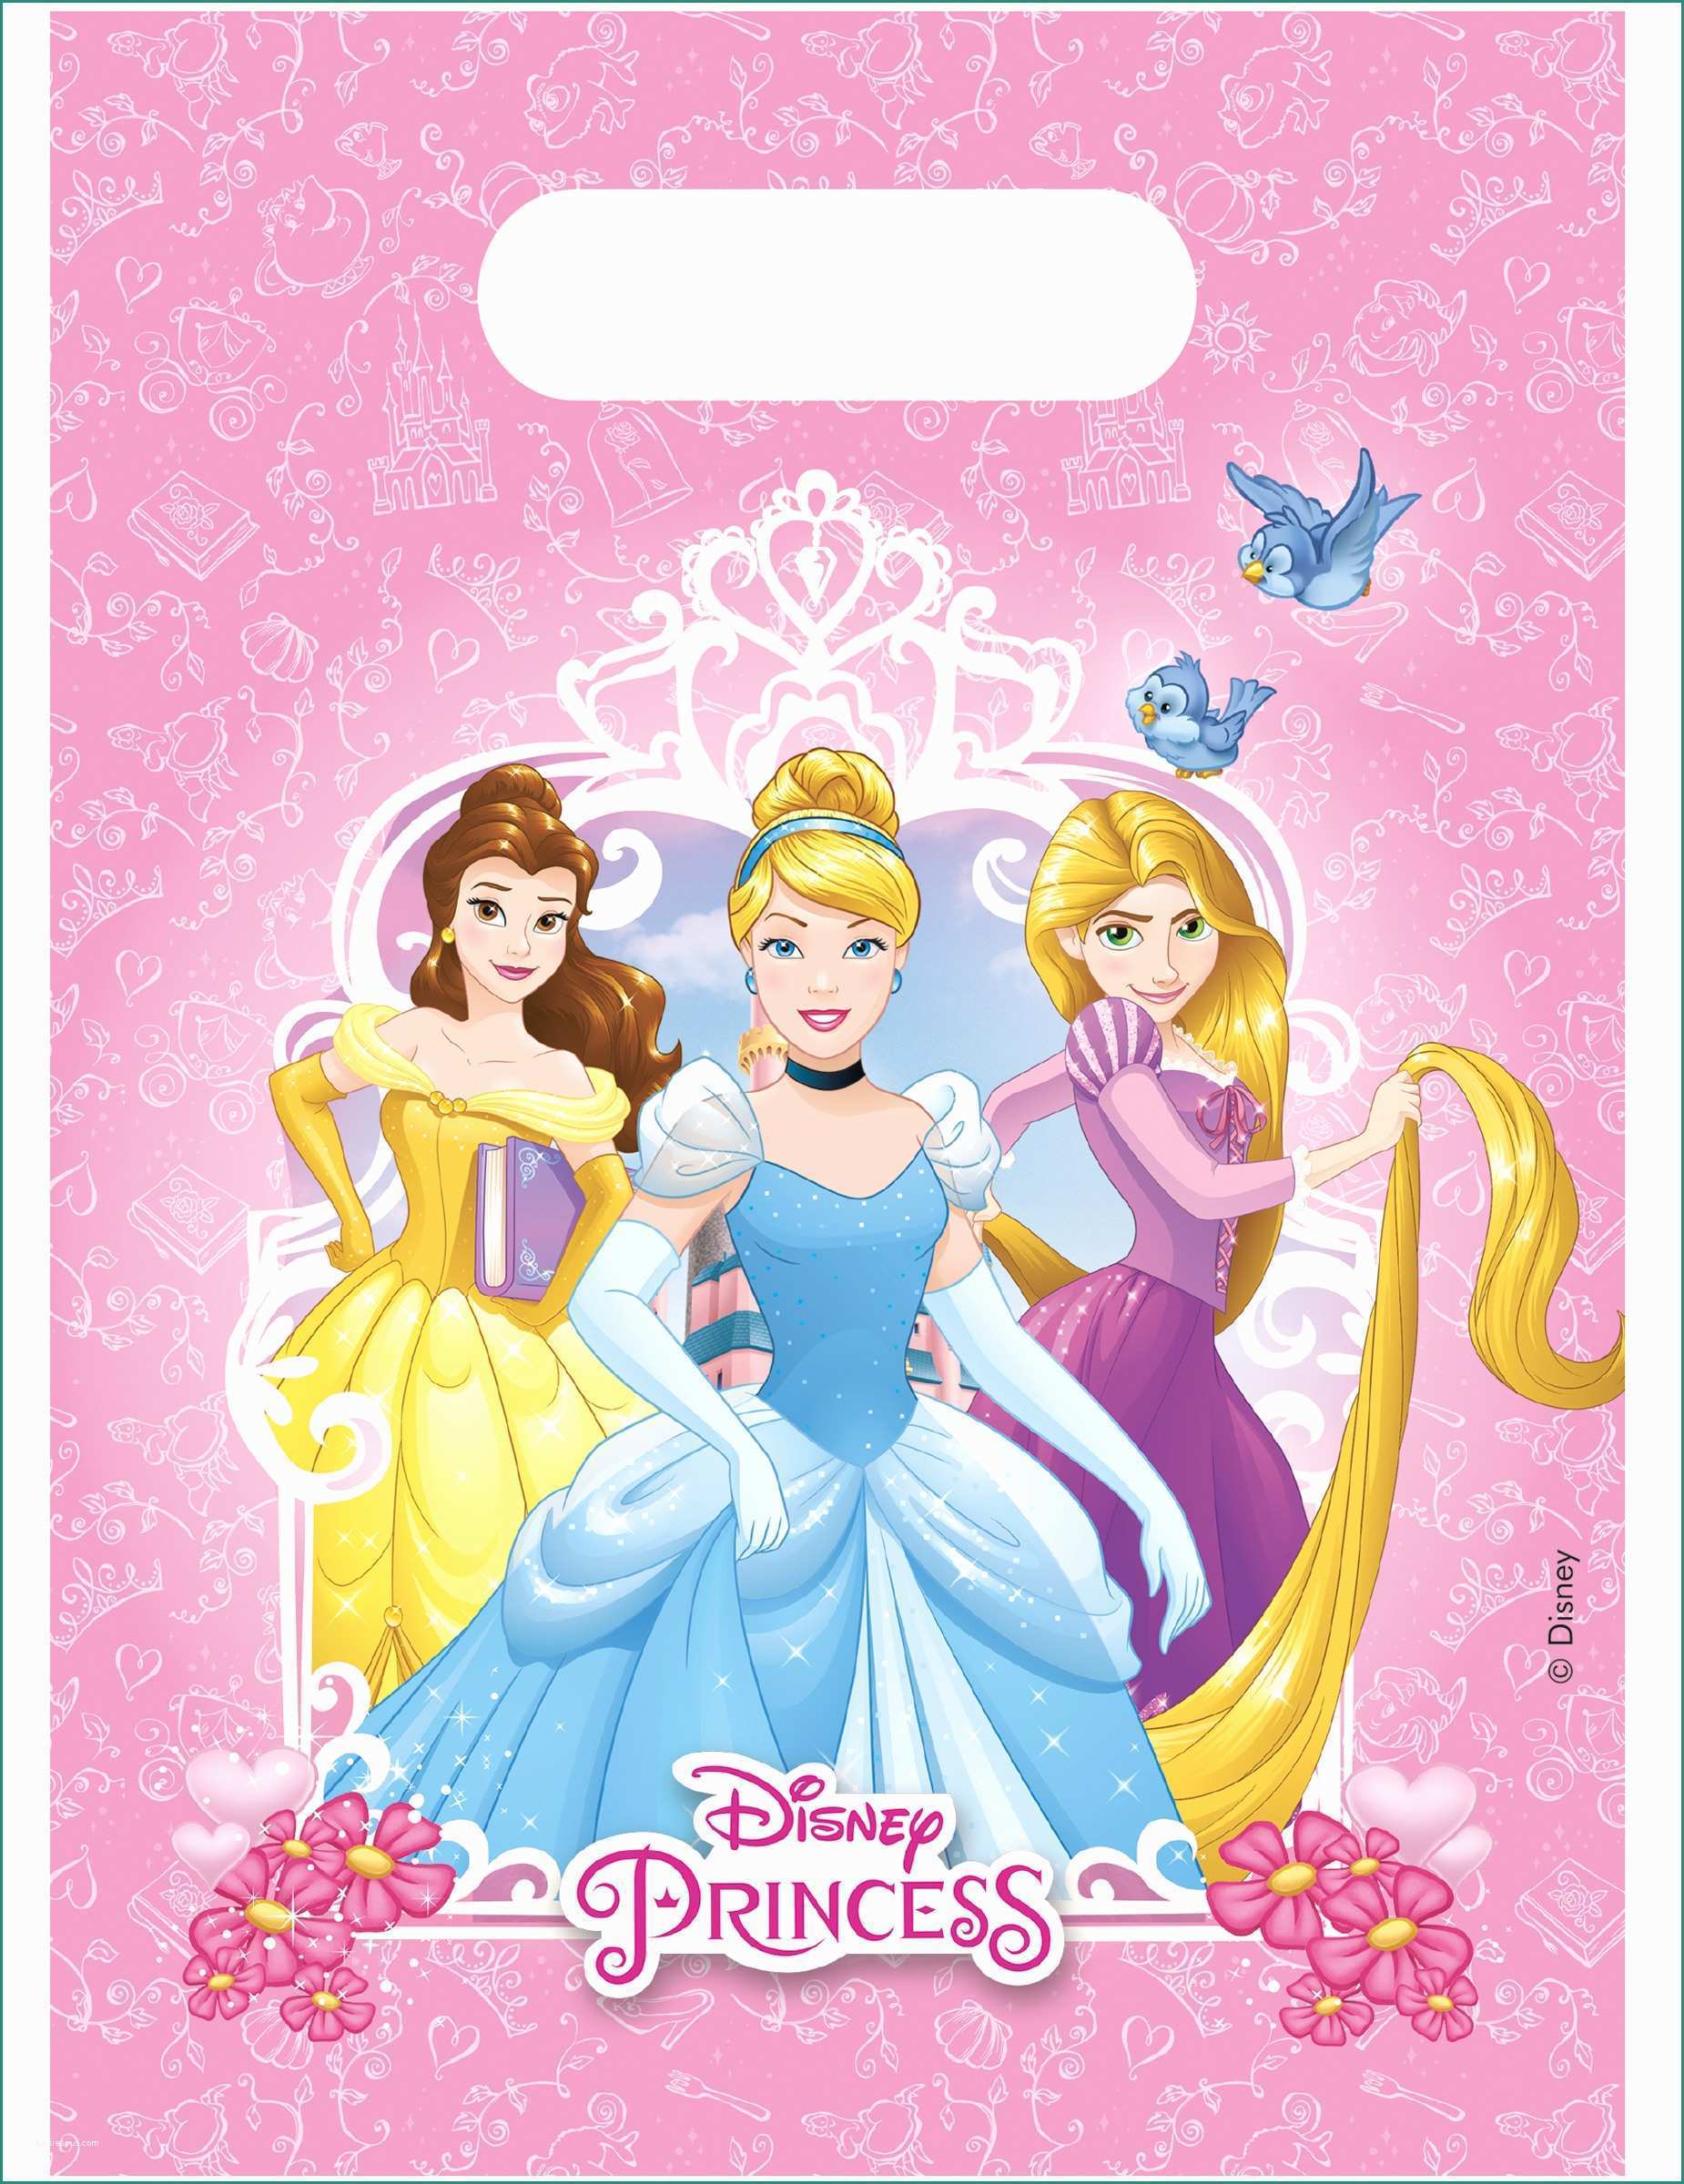 Immagini Principesse Disney Da Scaricare E 6 Sacchetti Regalo Delle Principesse Disney™ Addobbi E